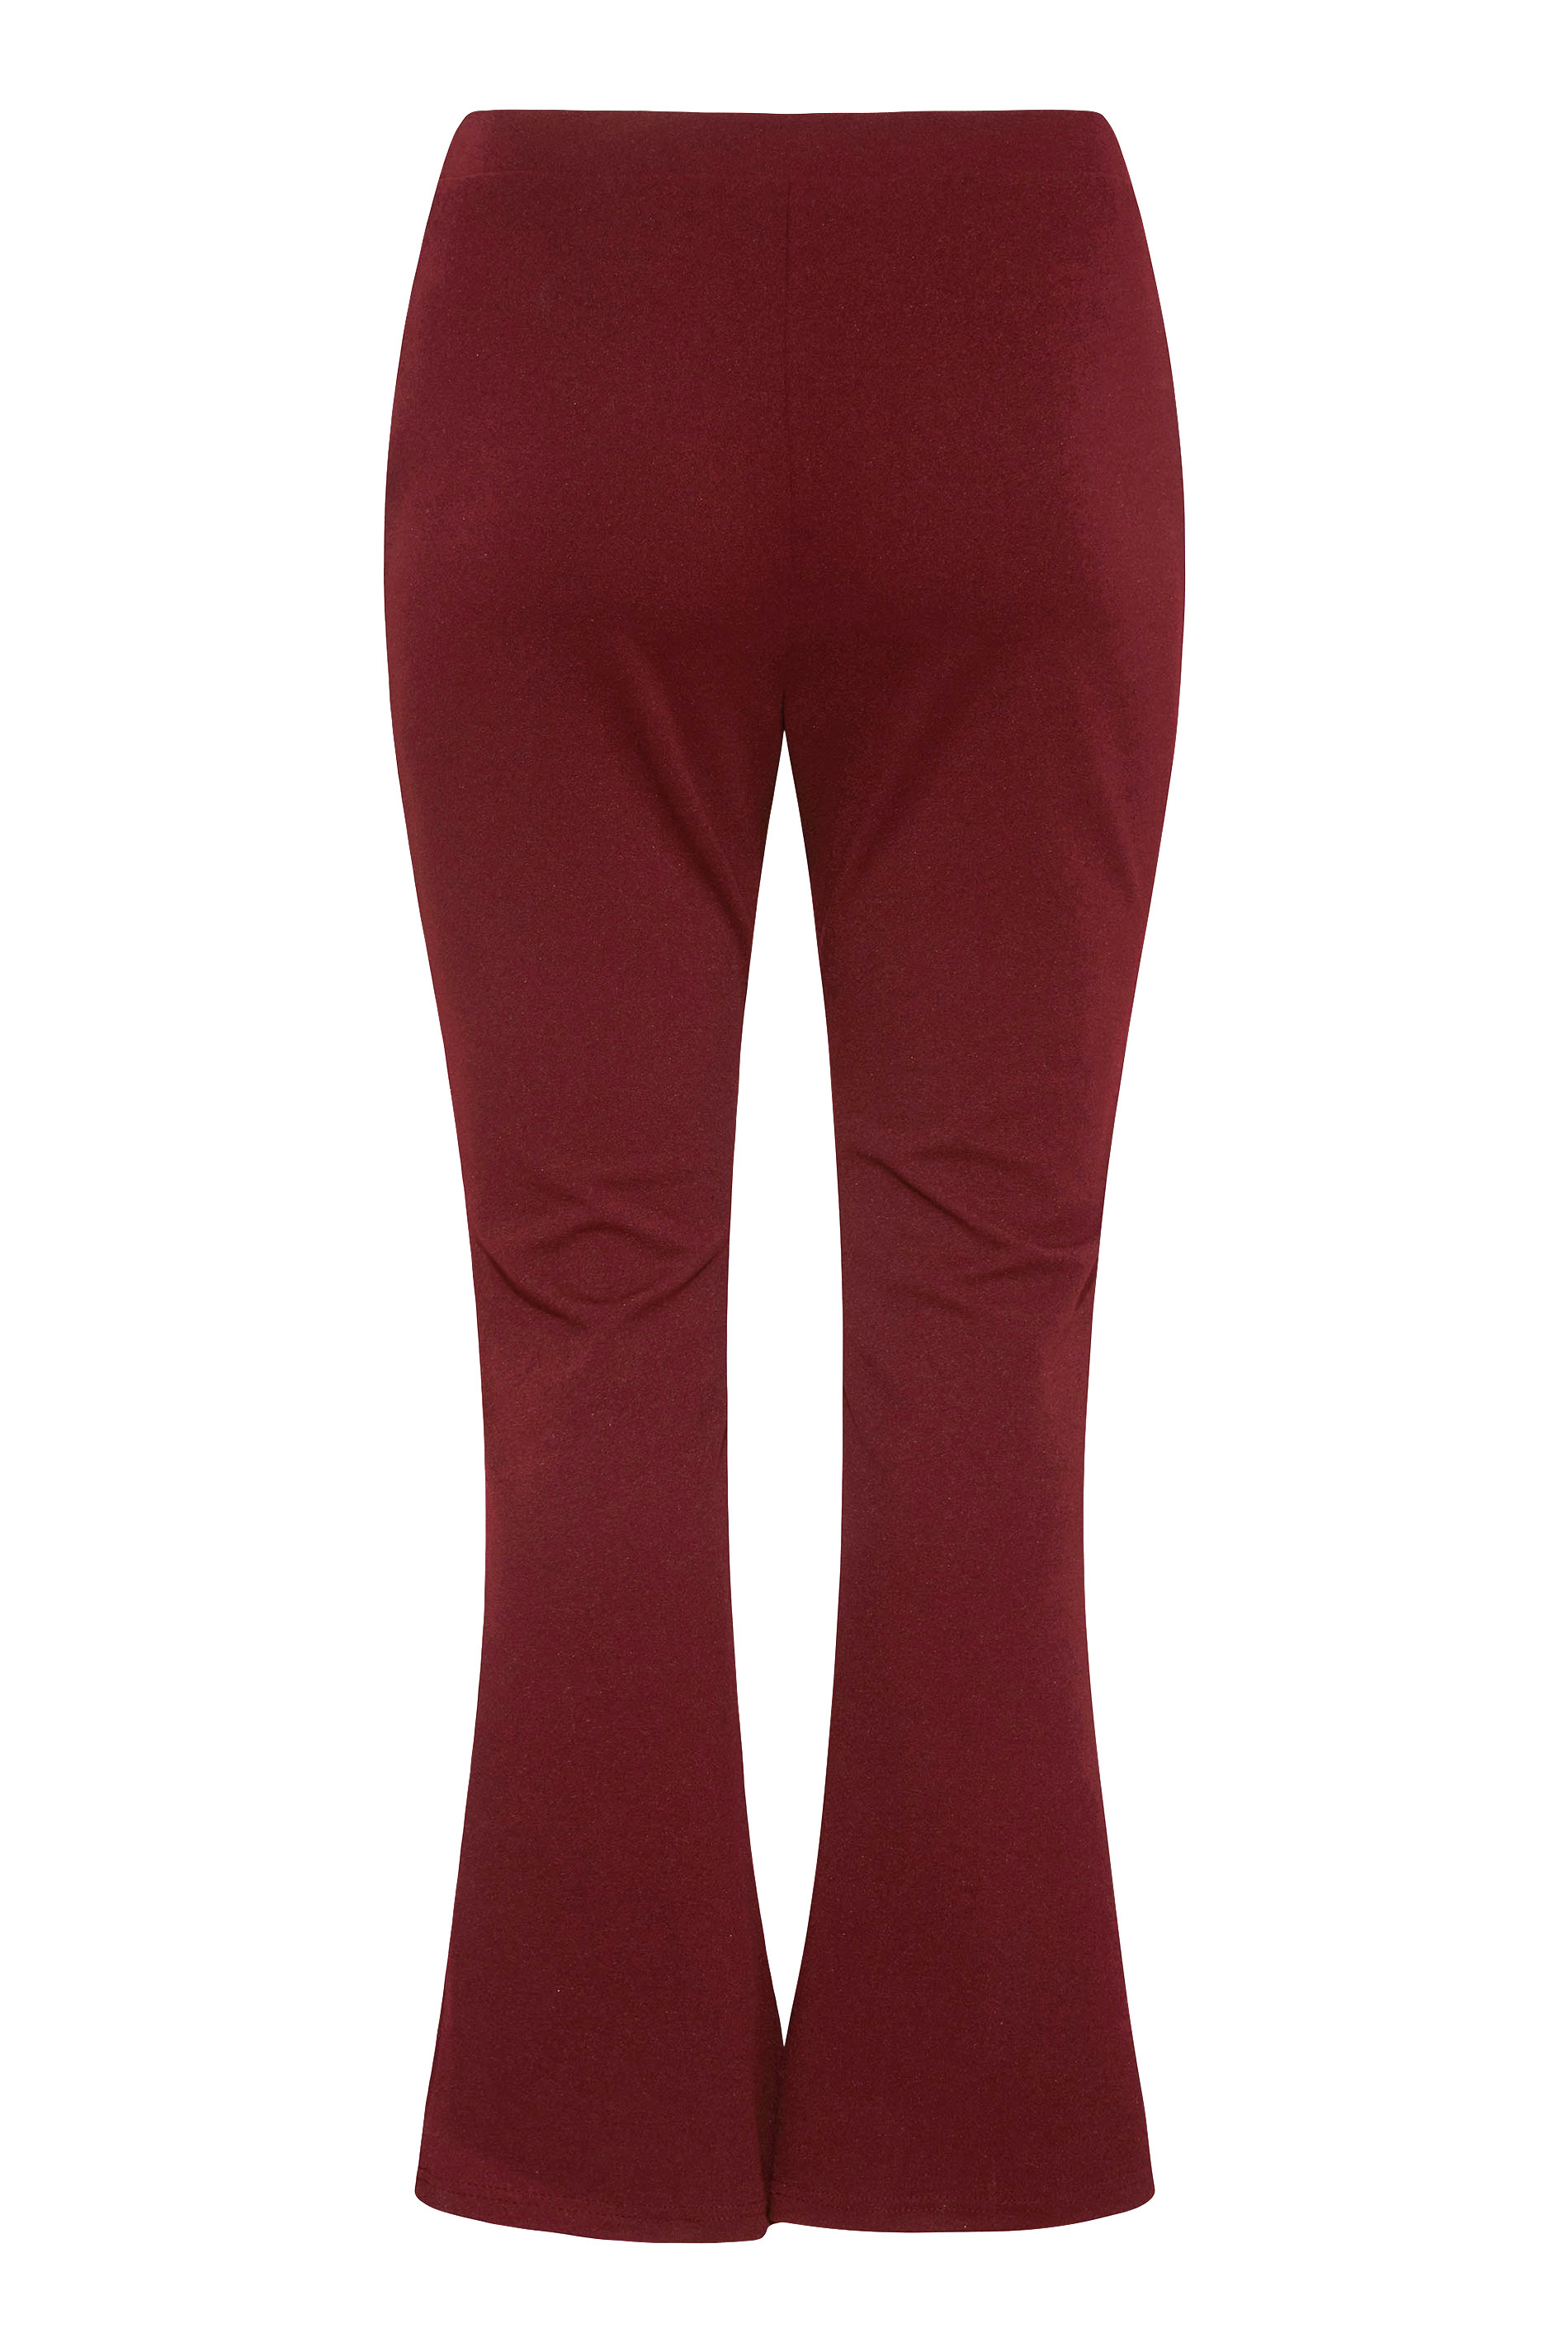 Grande taille  Pantalons Grande taille  Pantalons Larges, Wide Leg | Pantalon Rouge Vin Couture Style Ample - WL83440